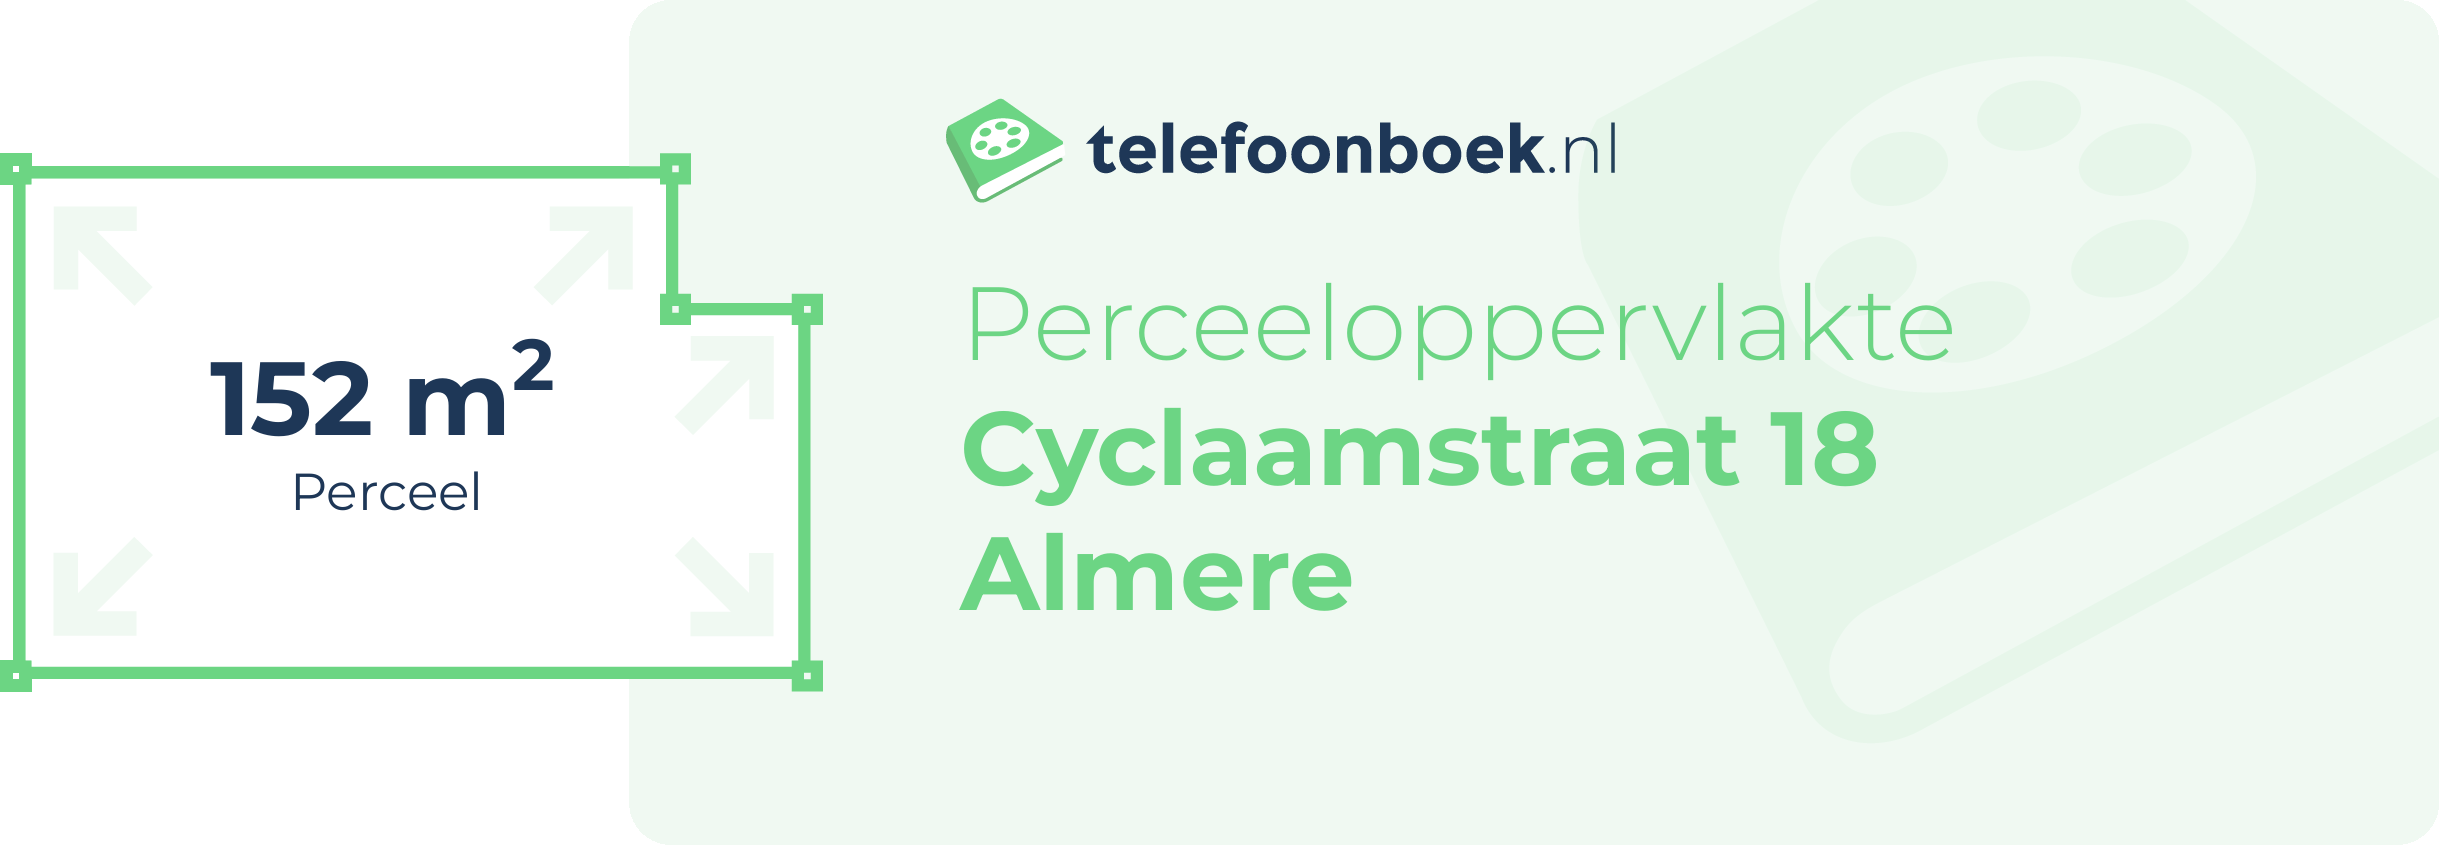 Perceeloppervlakte Cyclaamstraat 18 Almere